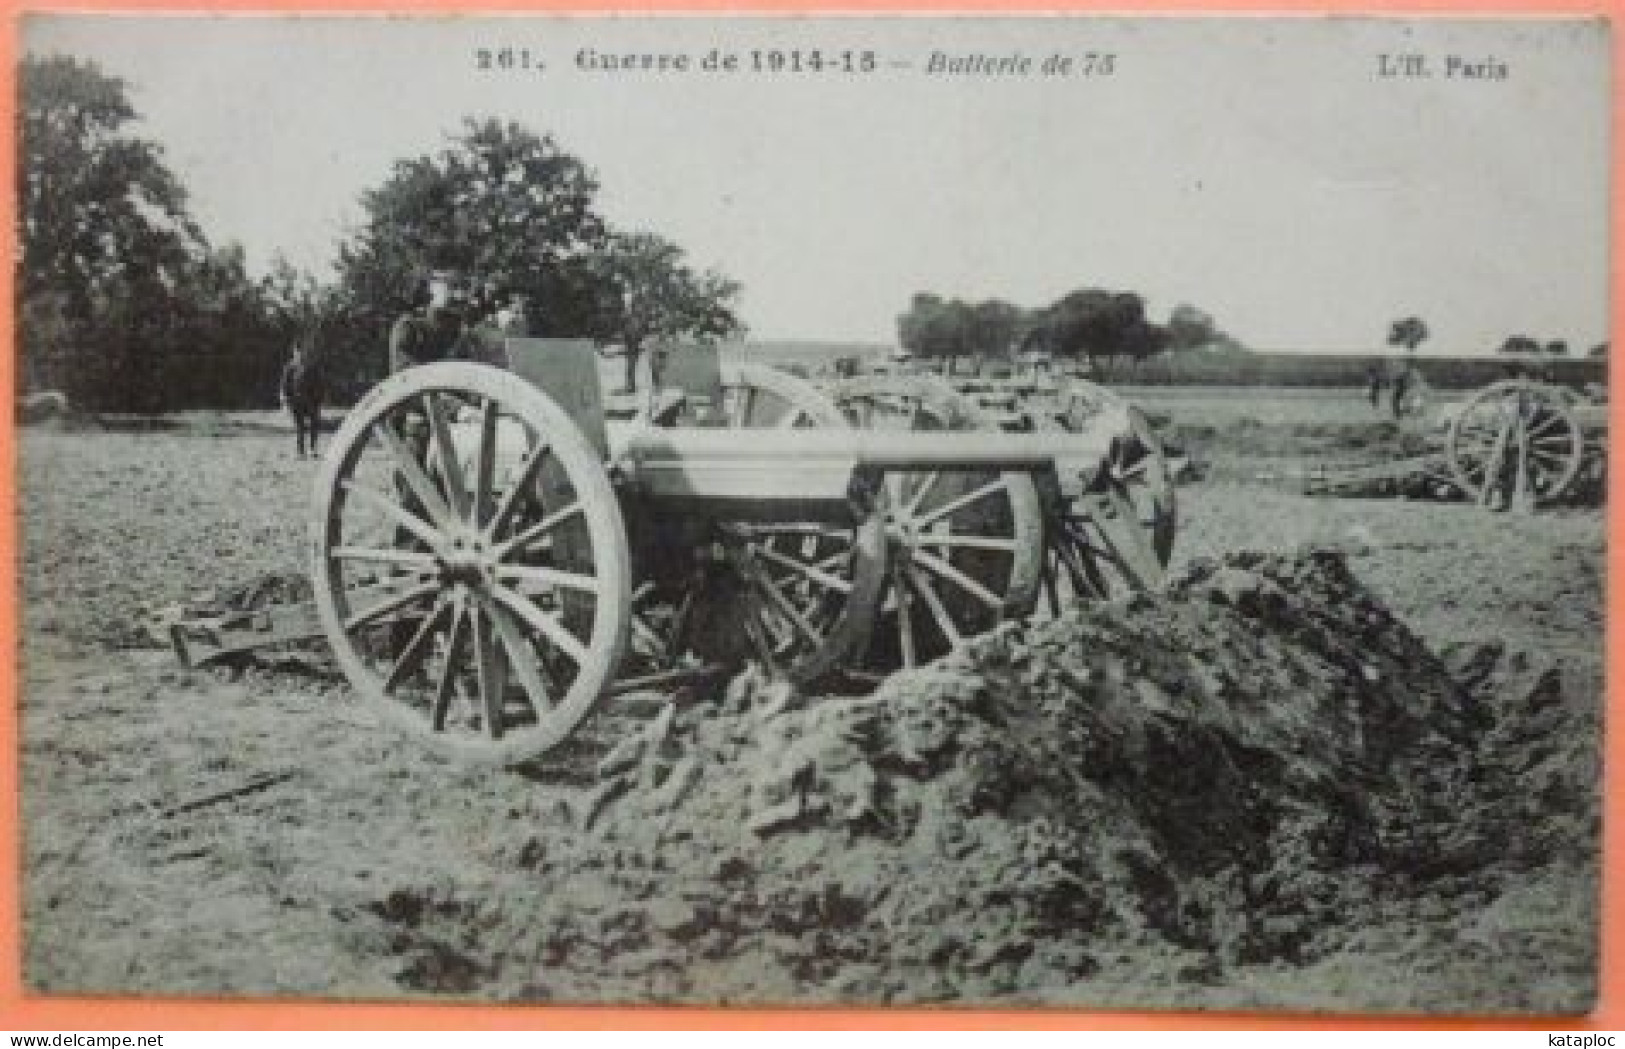 CARTE GUERRE DE 1914-15 - BATTERIE DE 75 -SCAN RECTO/VERSO-10 - Matériel